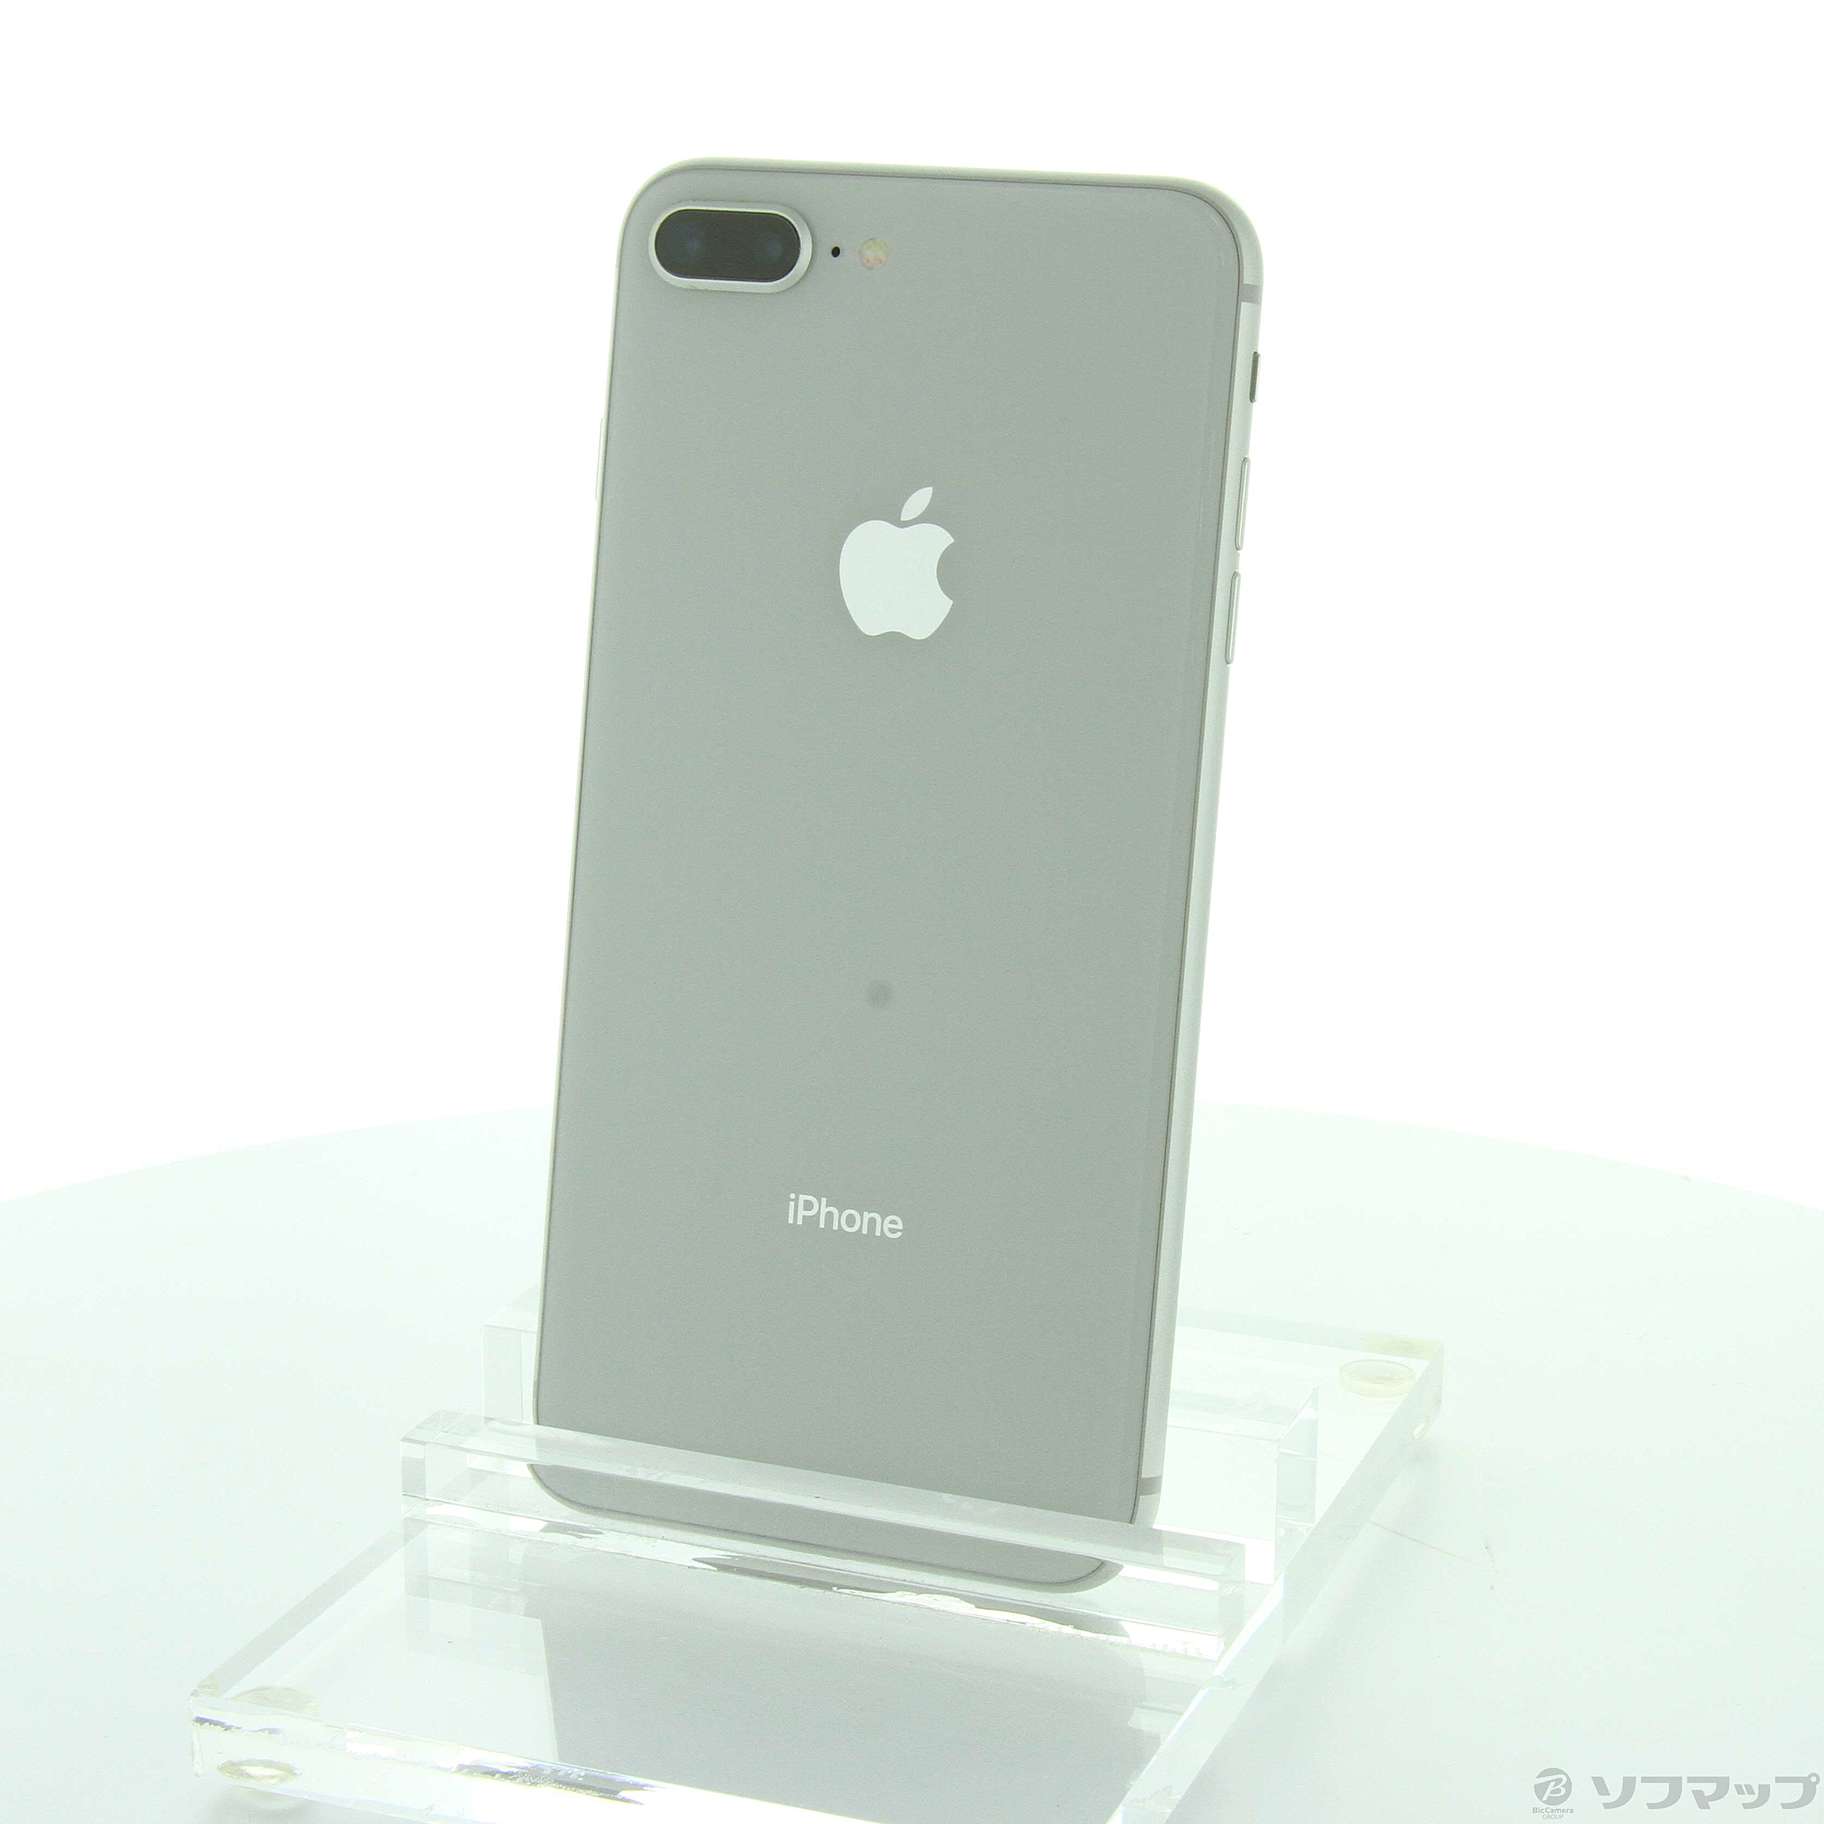 iPhone Silver 64 GB SIMフリー